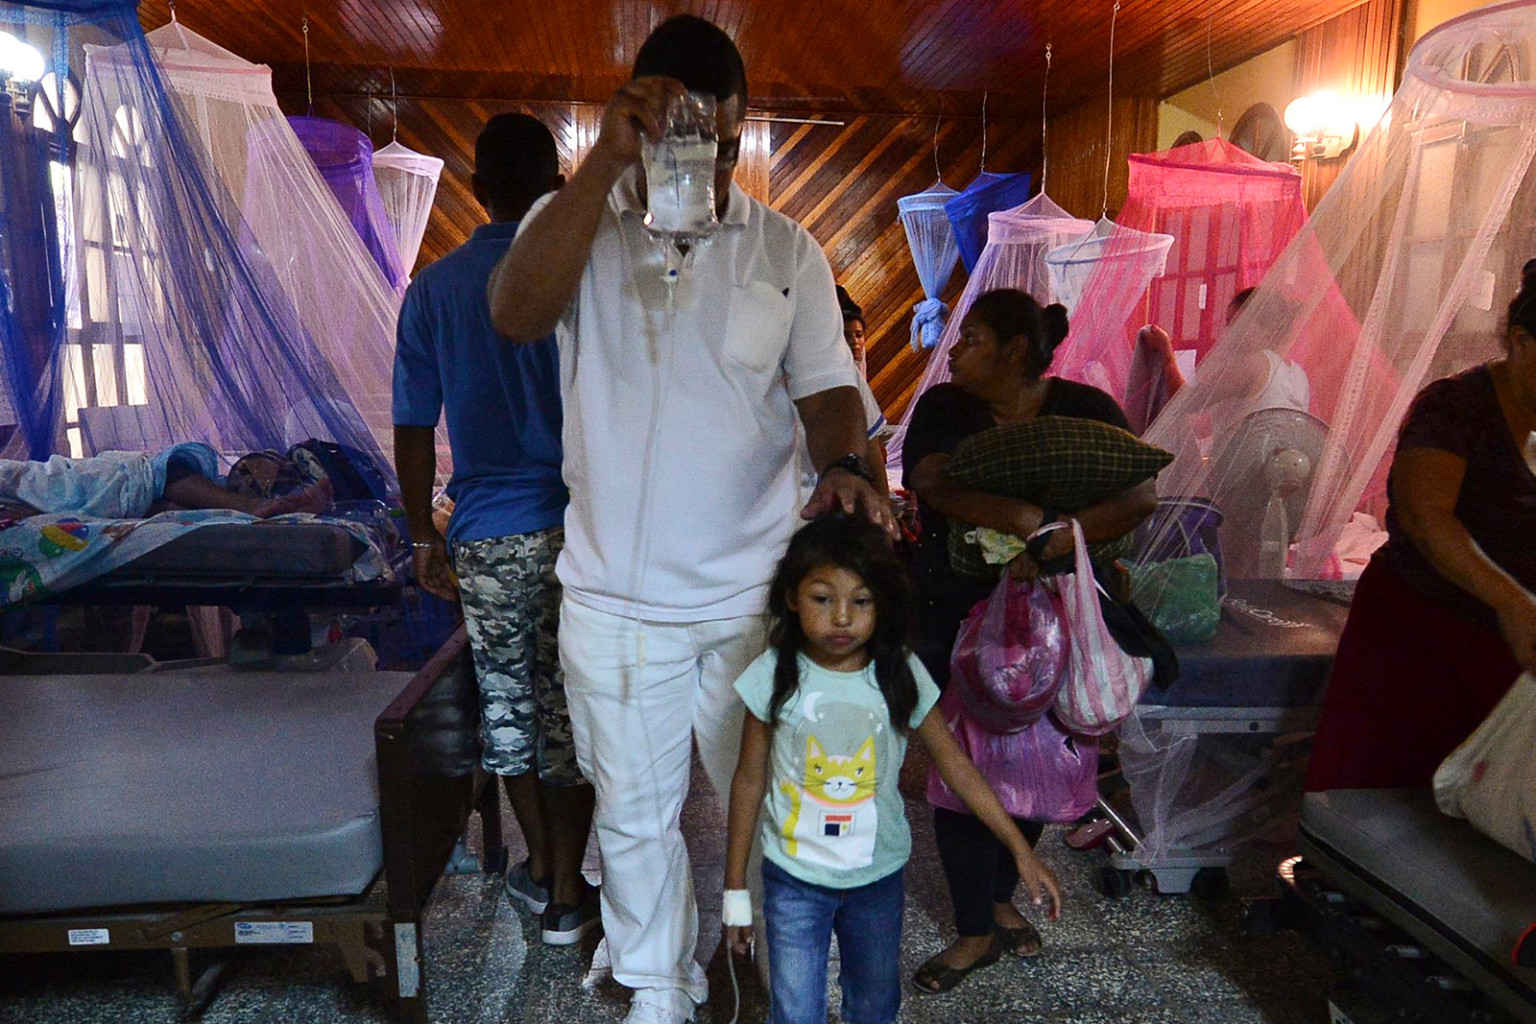   Bệnh nhân bị sốt xuất huyết được hỗ trợ trong nhà nguyện của Bệnh viện Roberto Suazo Córdova ở La Paz, Honduras, vào ngày 24 tháng 7. Một dòng người nhiễm bệnh sốt xuất huyết đã tràn vào các bệnh viện công ở Honduras trong trường hợp các cơ quan y tế mô tả là trường hợp khẩn cấp tồi tệ nhất của 50 năm qua vì virus đã giết chết 54 người, chủ yếu là trẻ em.  